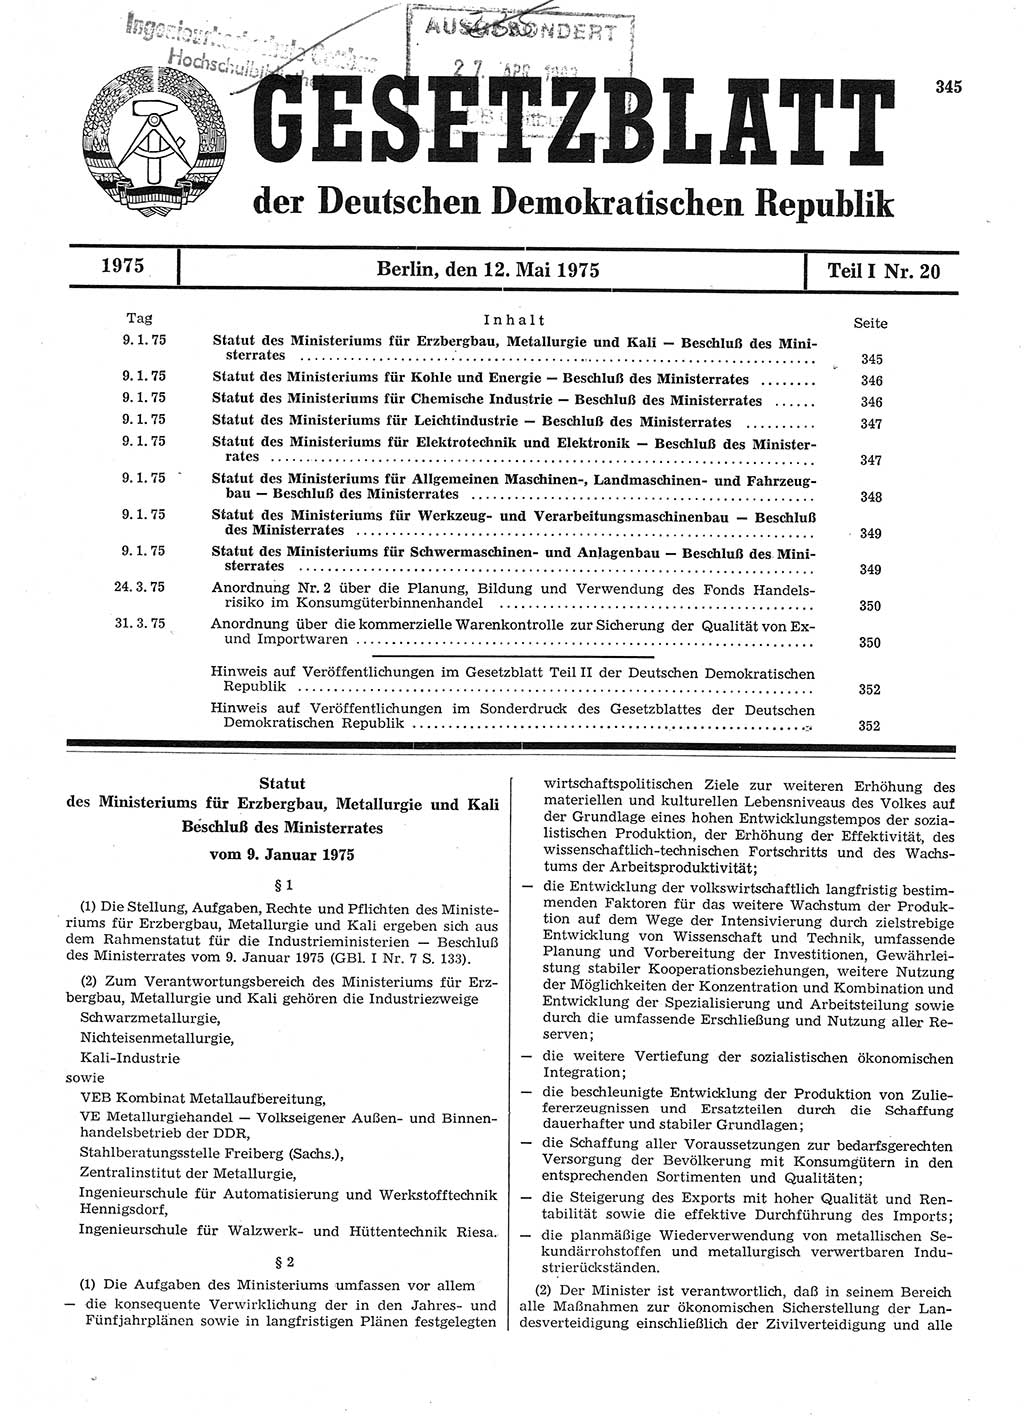 Gesetzblatt (GBl.) der Deutschen Demokratischen Republik (DDR) Teil Ⅰ 1975, Seite 345 (GBl. DDR Ⅰ 1975, S. 345)